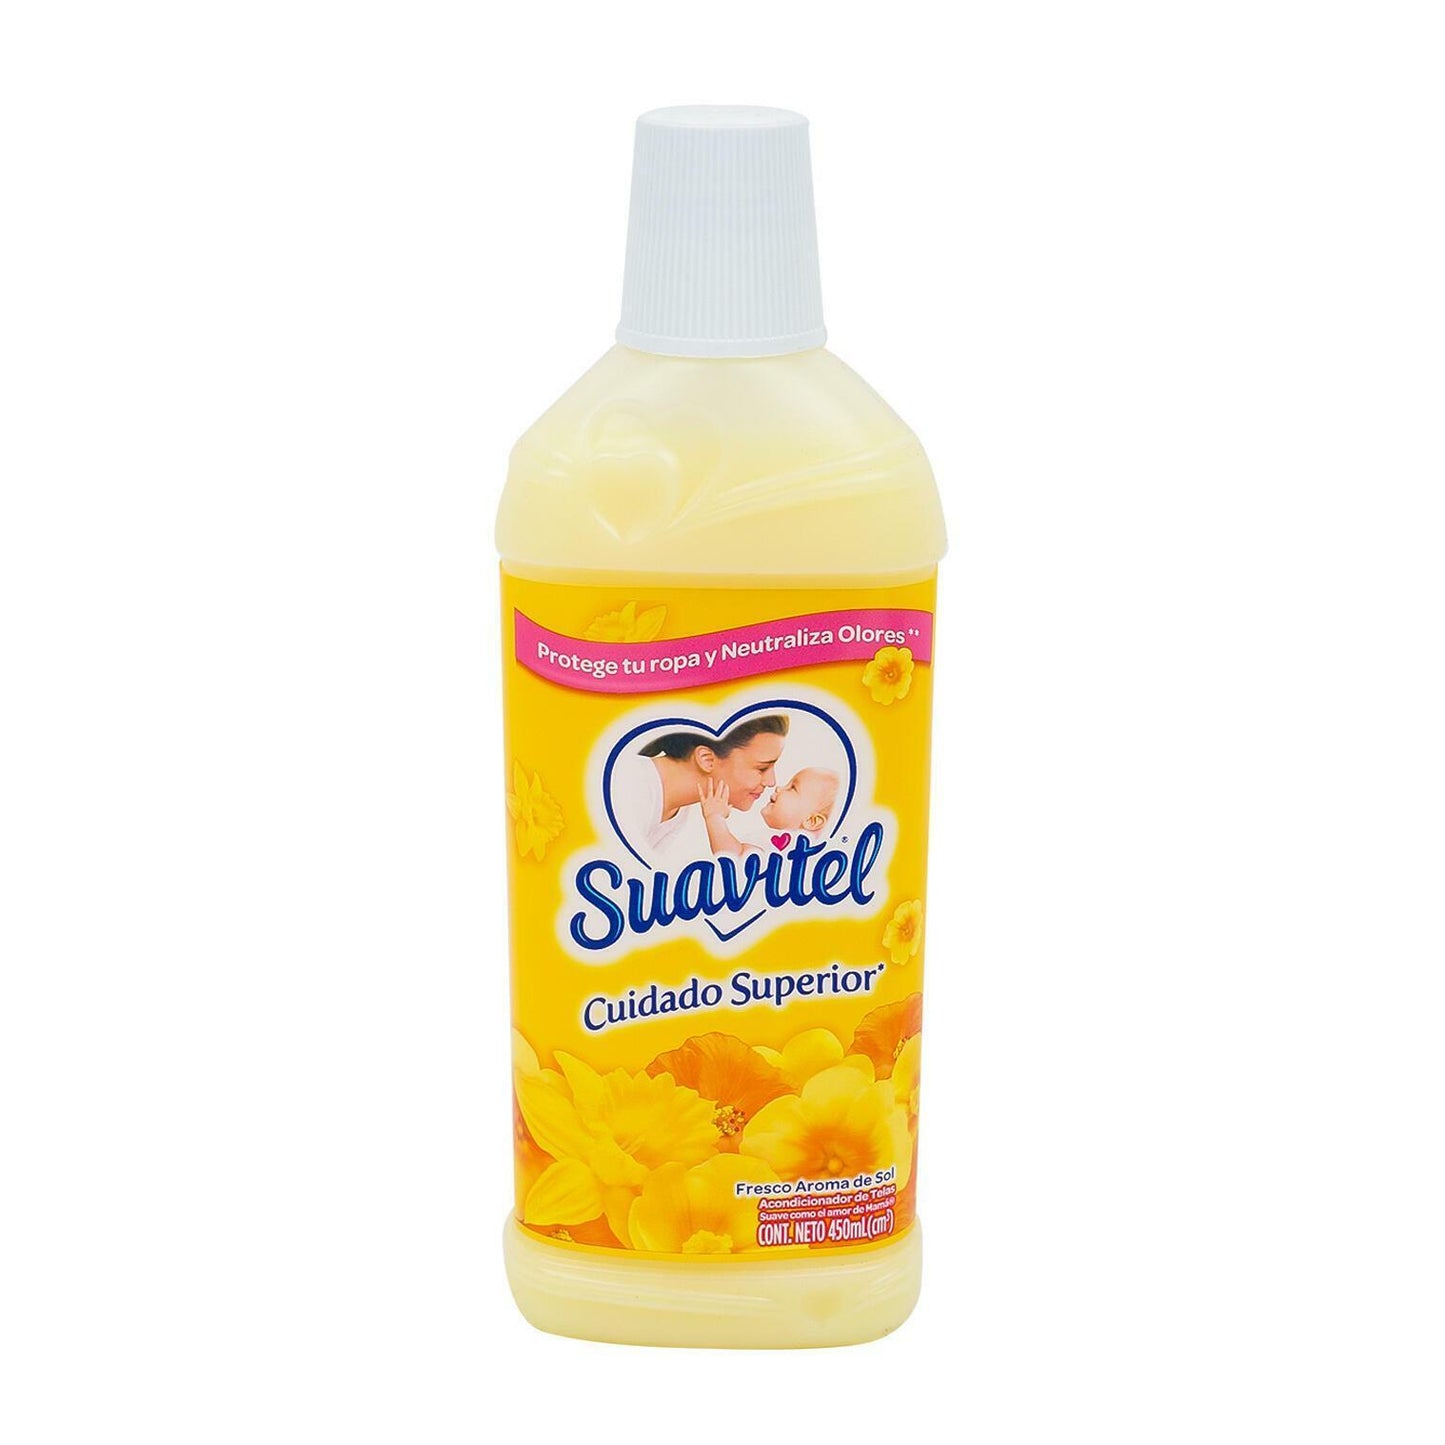 Suavitel Liquid Detergent, 15 Ounces